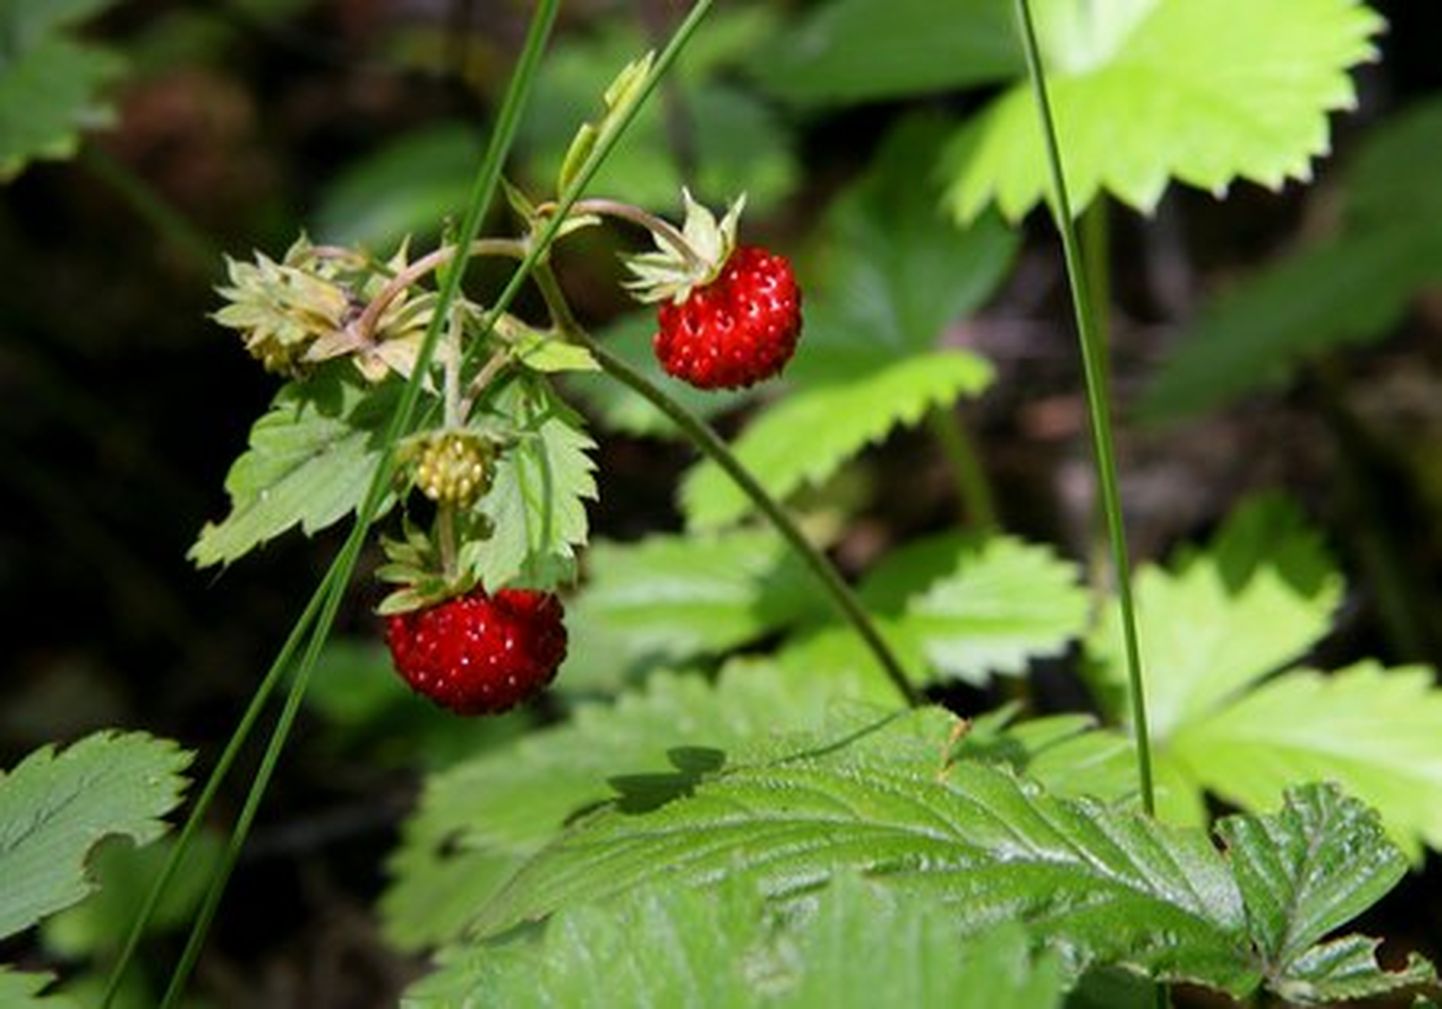 Esimesed metsmaasikaõied võttis ära öökülm, nii ongi maasikaaeg lükkumas jaanijärgsesse aega.